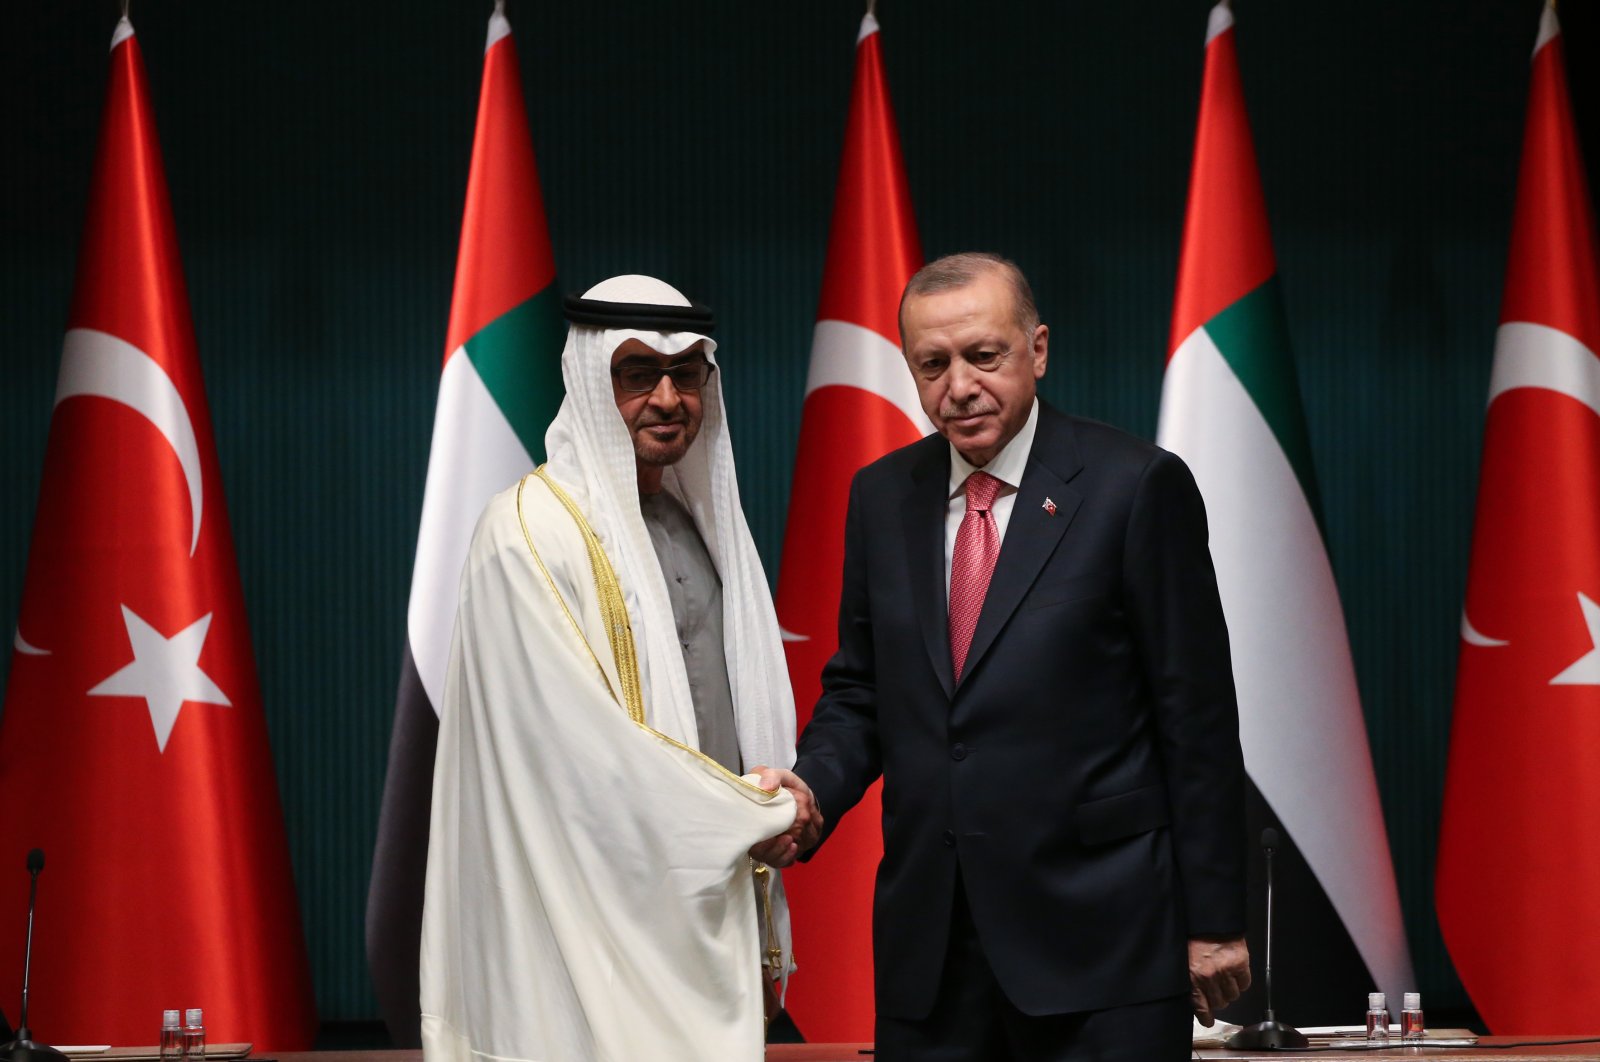 Pertemuan Erdoğan-MBZ membuktikan Turki berjuang untuk perdamaian regional: Altun